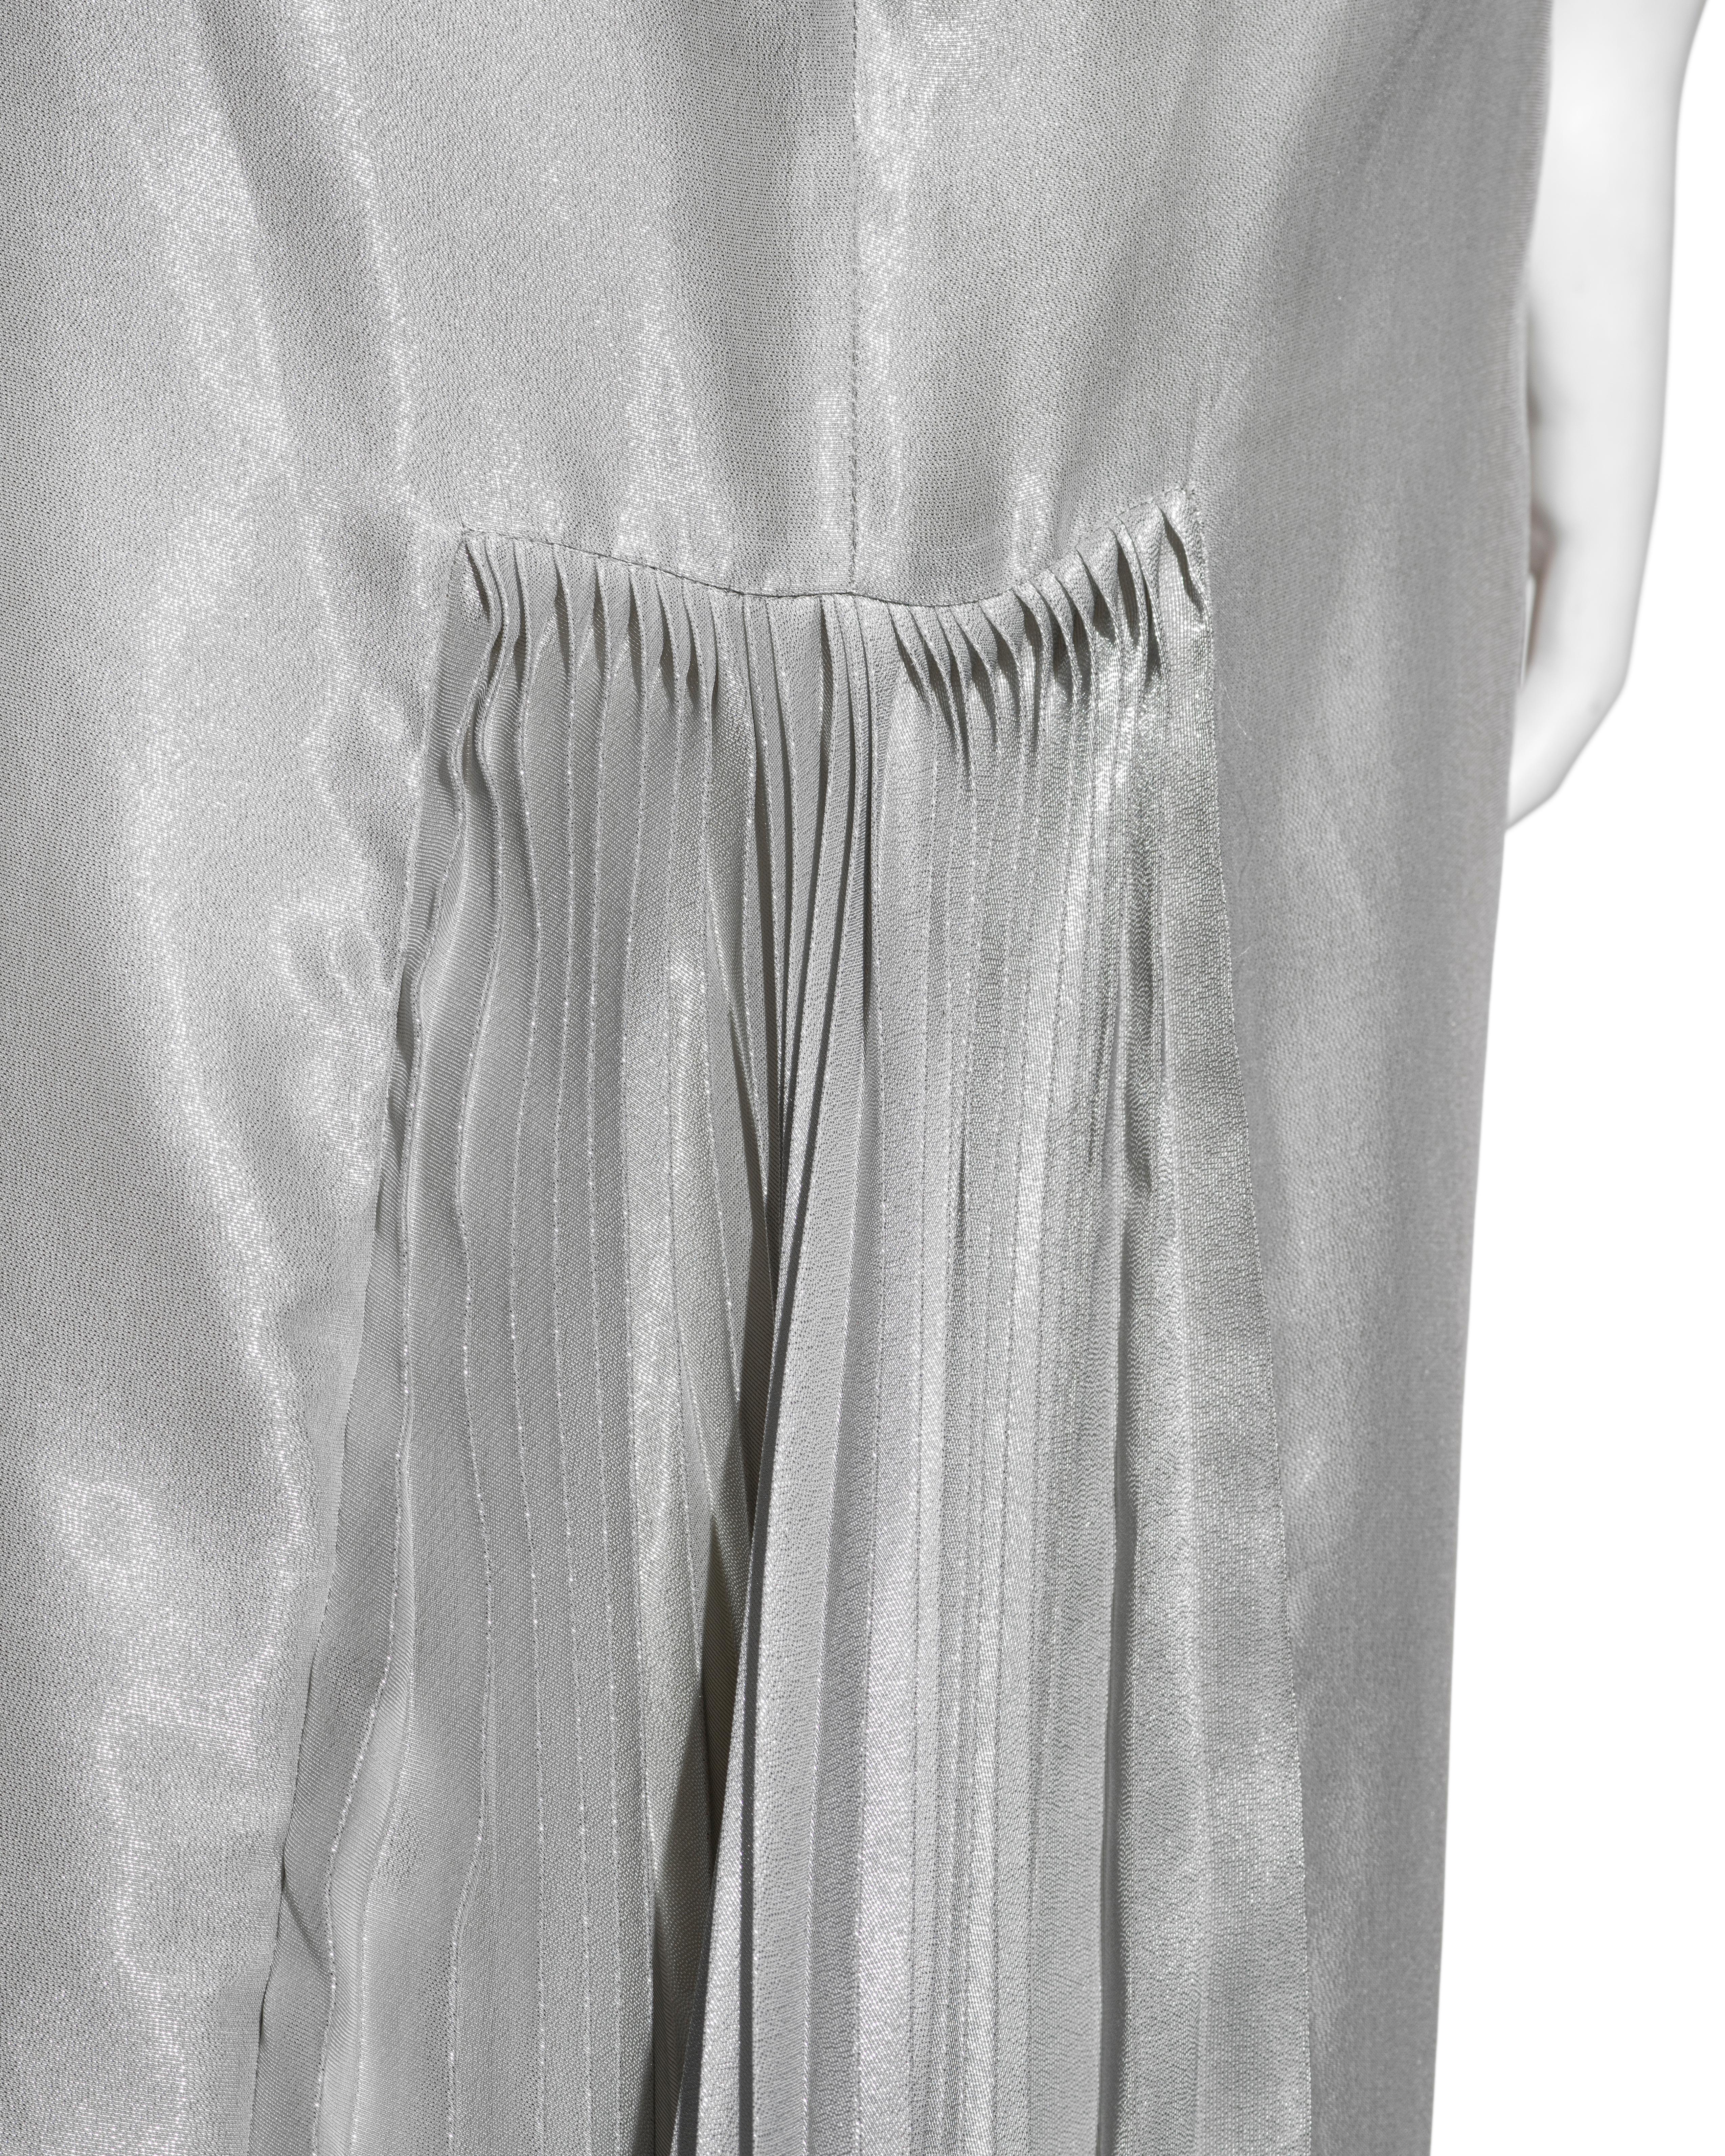 Alexander McQueen metallic silver silk lamé open-back evening dress, ss 1997 For Sale 4